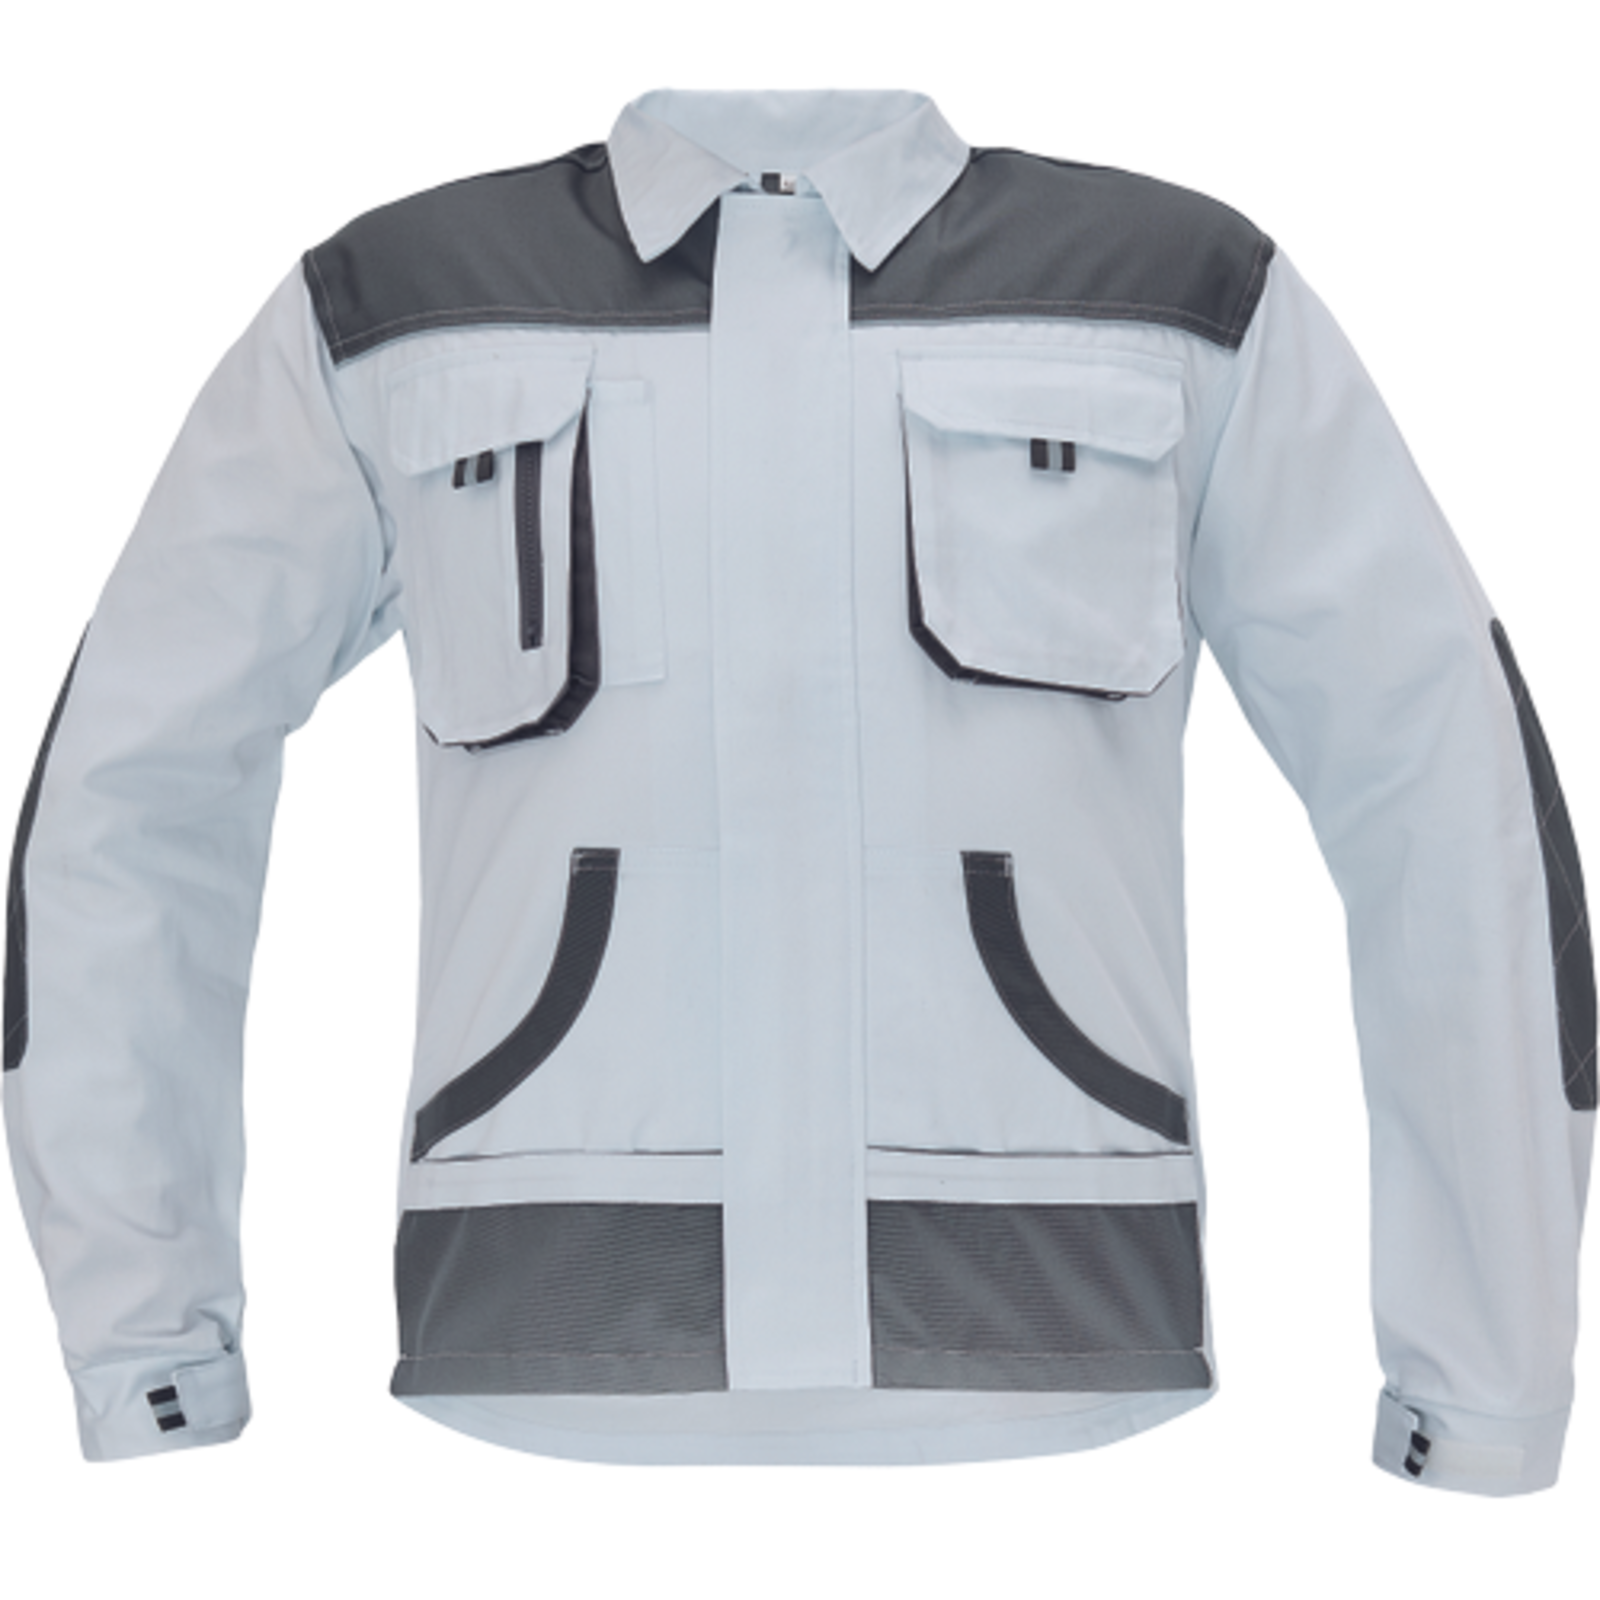 Odolná pracovná bunda Cerva FF Hans - veľkosť: 64, farba: biela/sivá